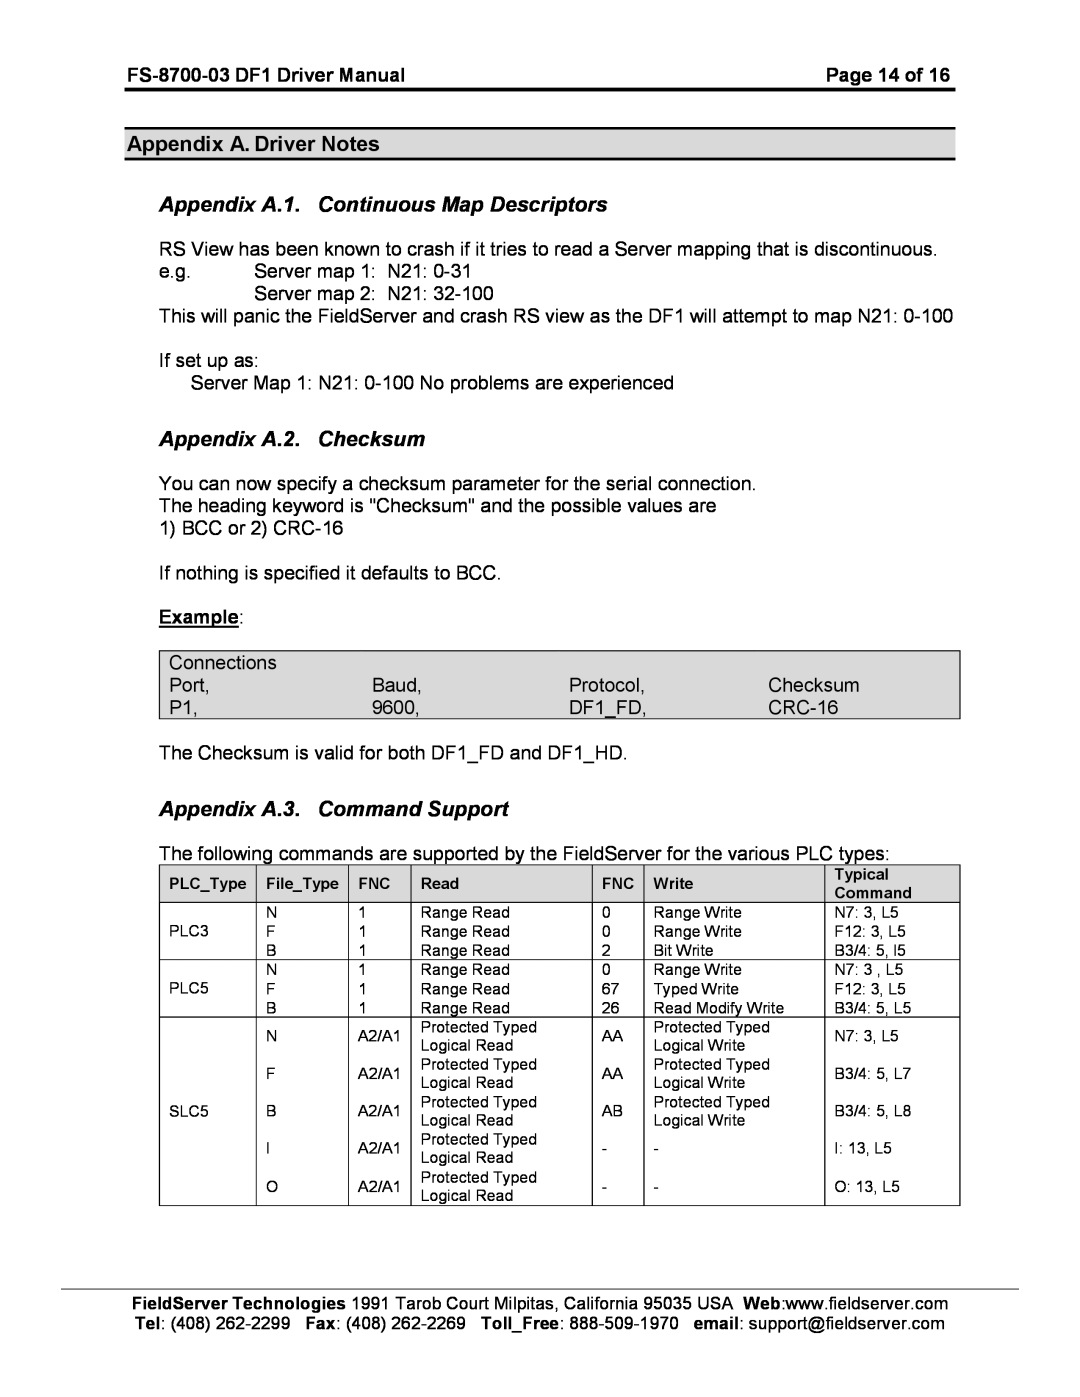 FieldServer FS-8700-03 DF1 Appendix A. Driver Notes Appendix A.1. Continuous Map Descriptors, Appendix A.2. Checksum 